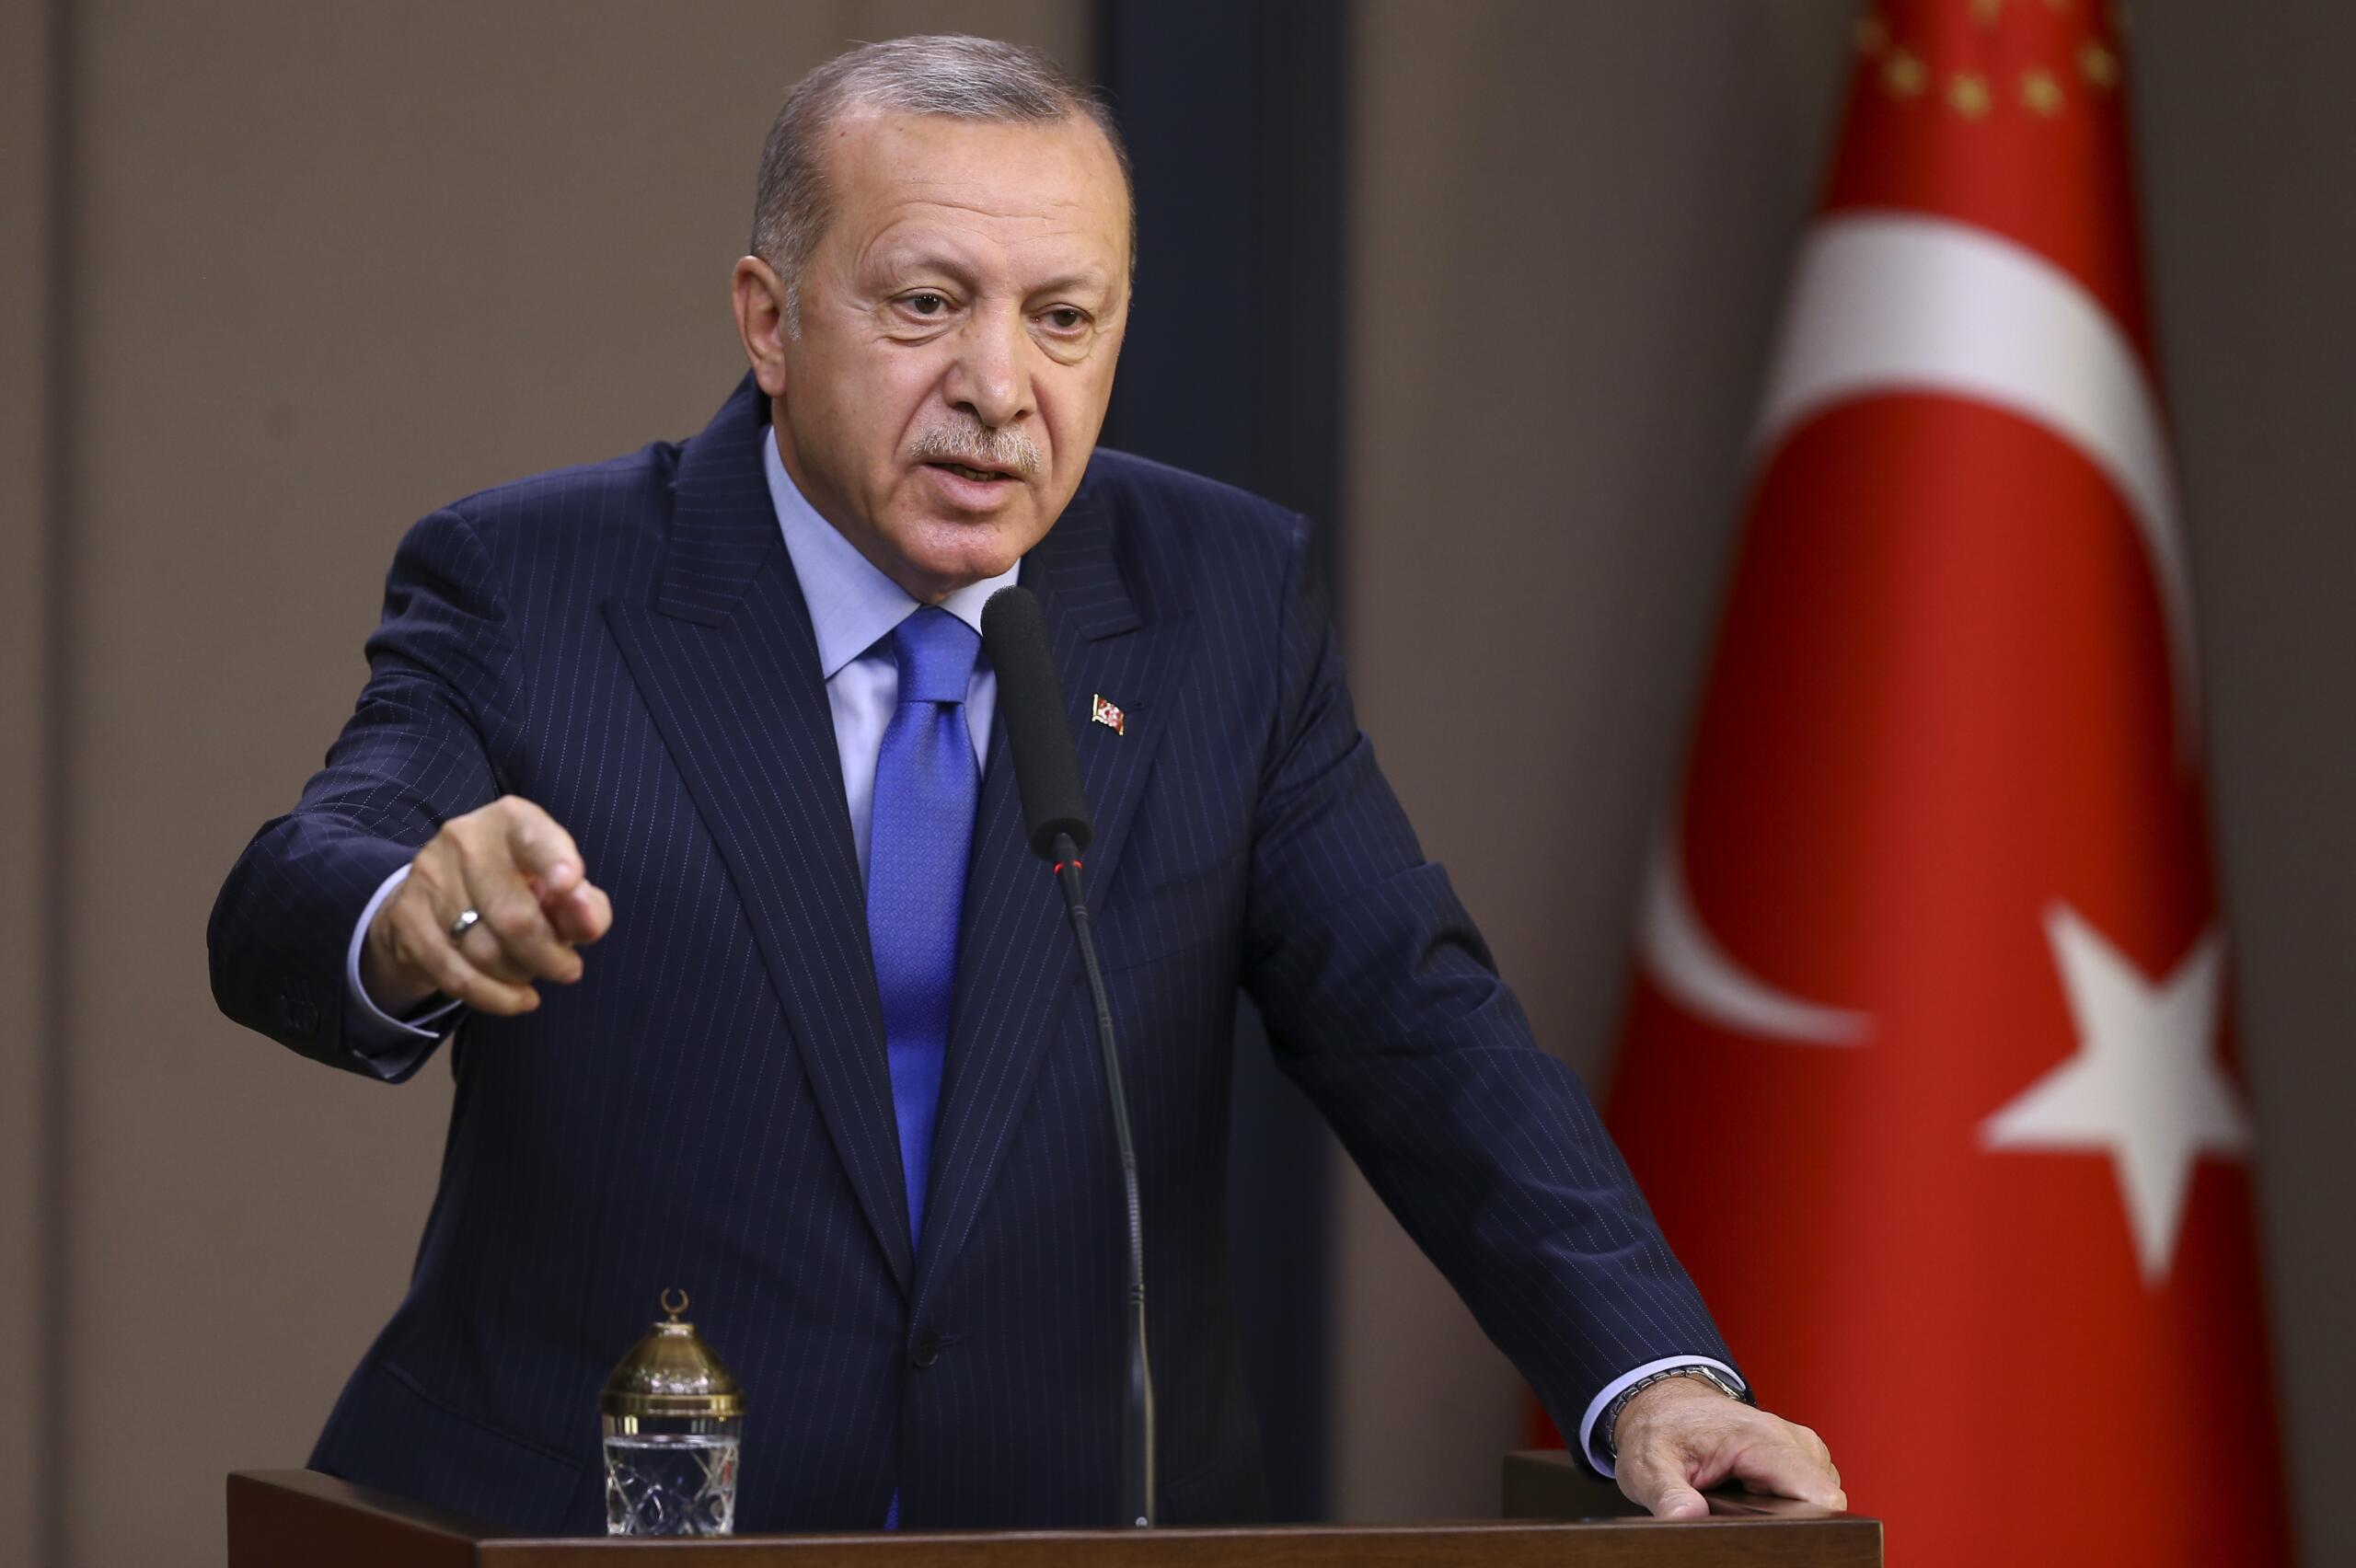 Erdoğan: “Kıbrıs Meselesinde Gerçekçi ve Yeni Seçeneklerin Tartışılması Gerekir”